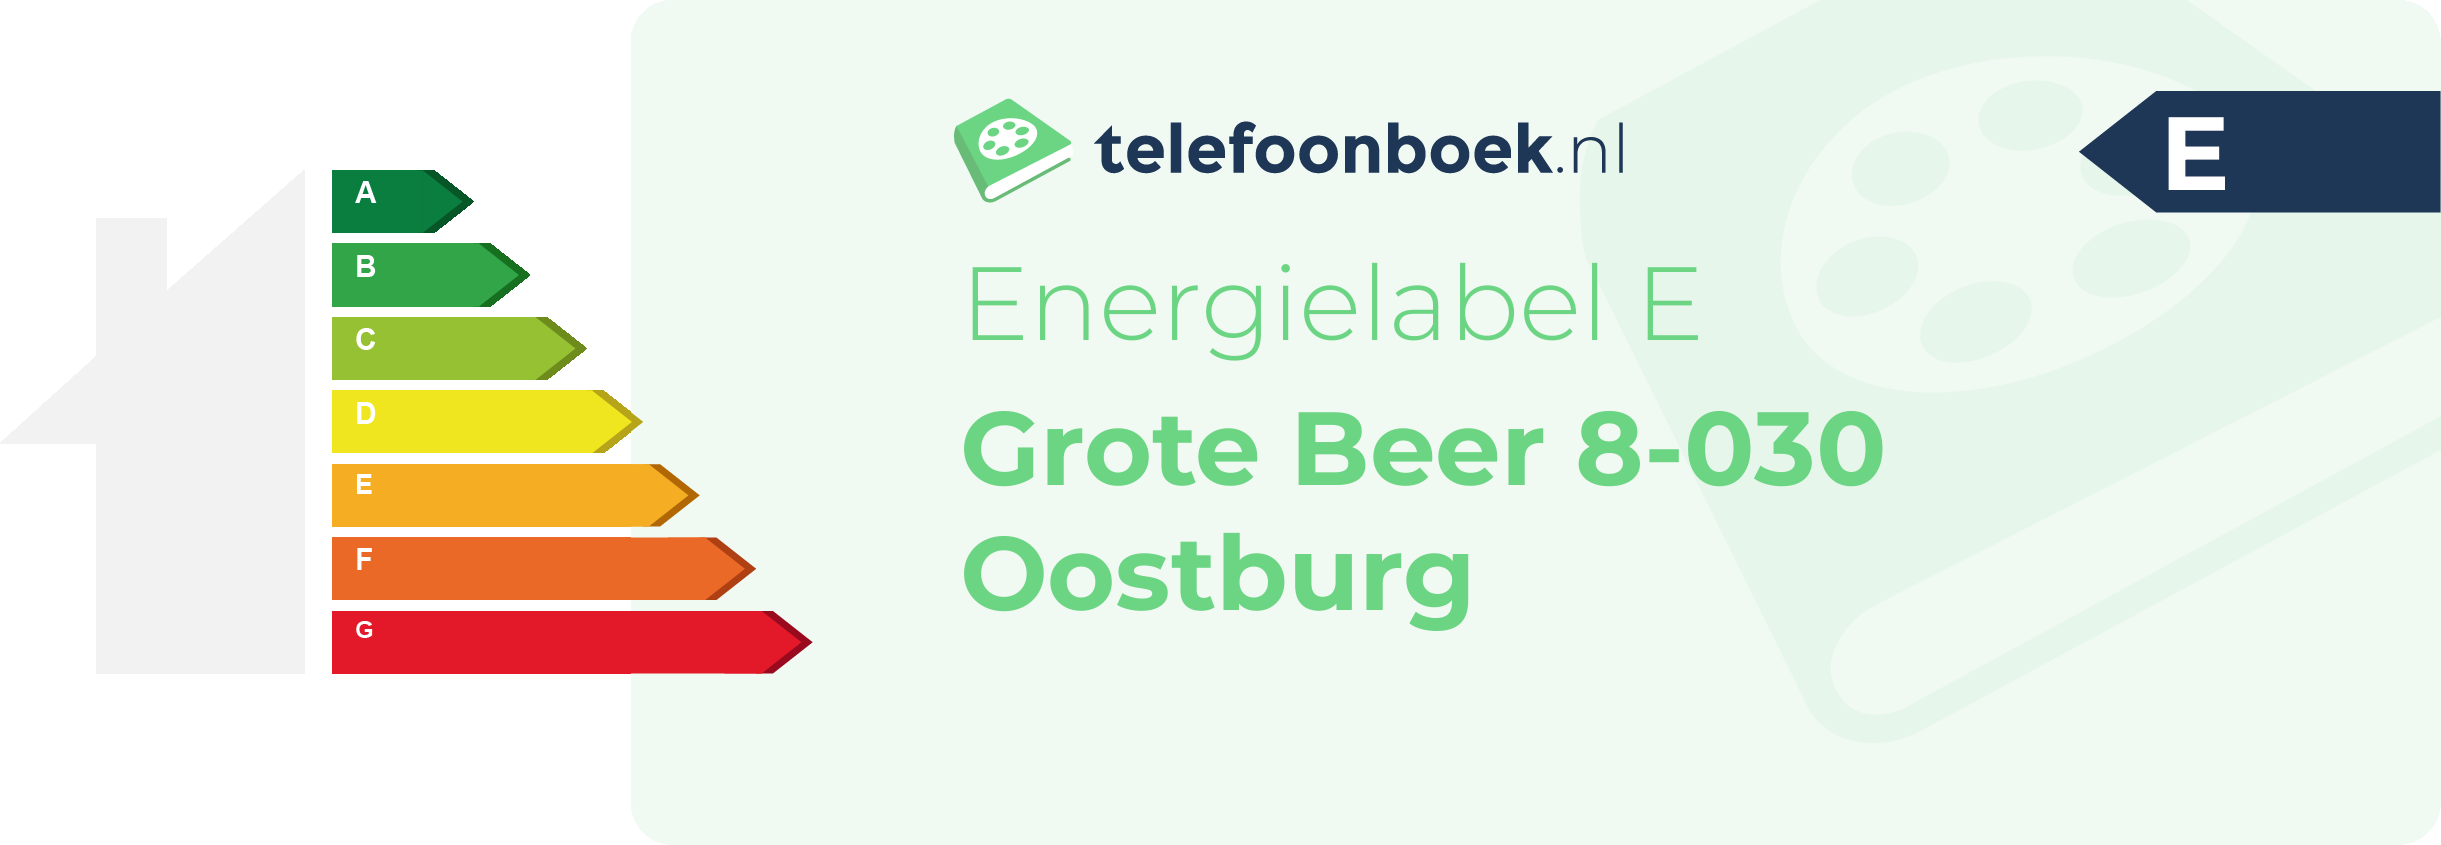 Energielabel Grote Beer 8-030 Oostburg